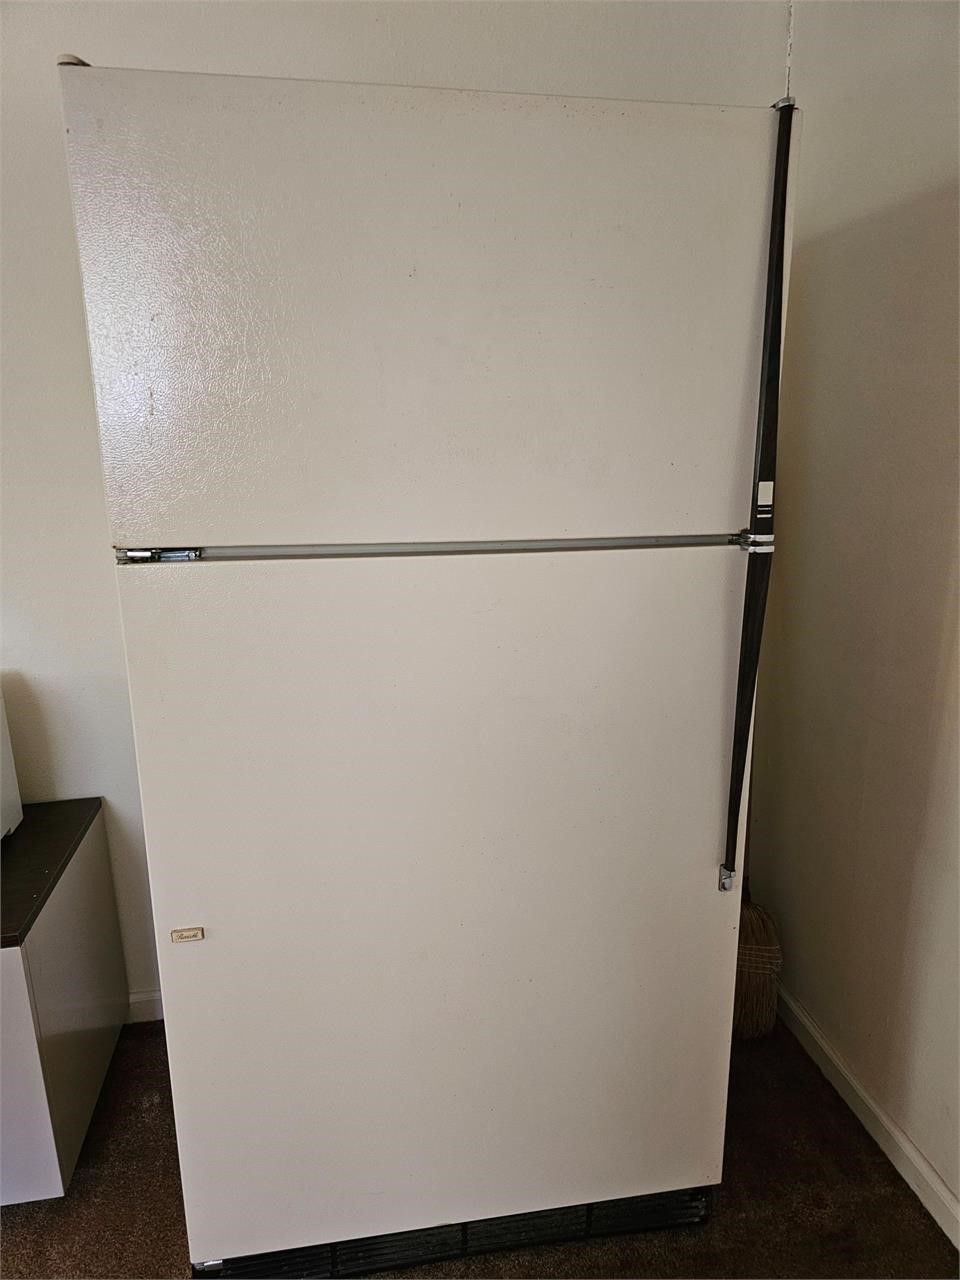 Kenmore Frost free fridge